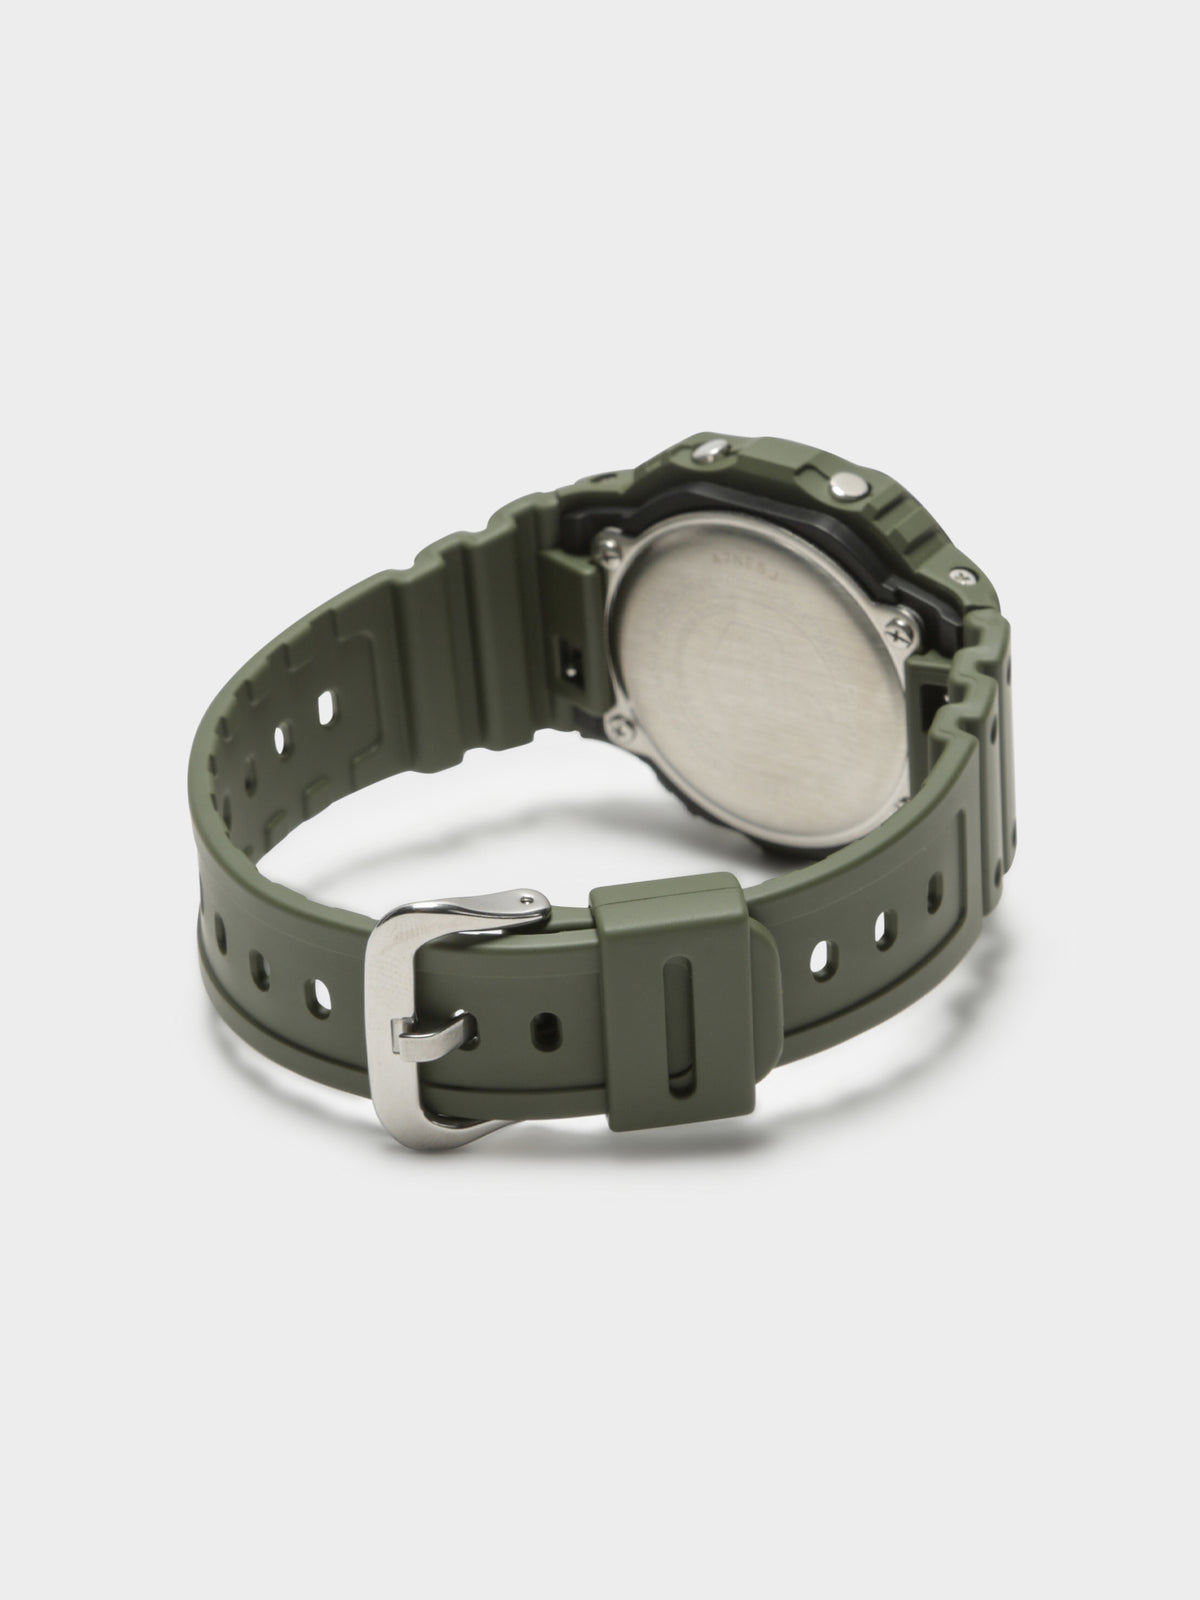 DW5610SU3D Digital Watch in Army Green